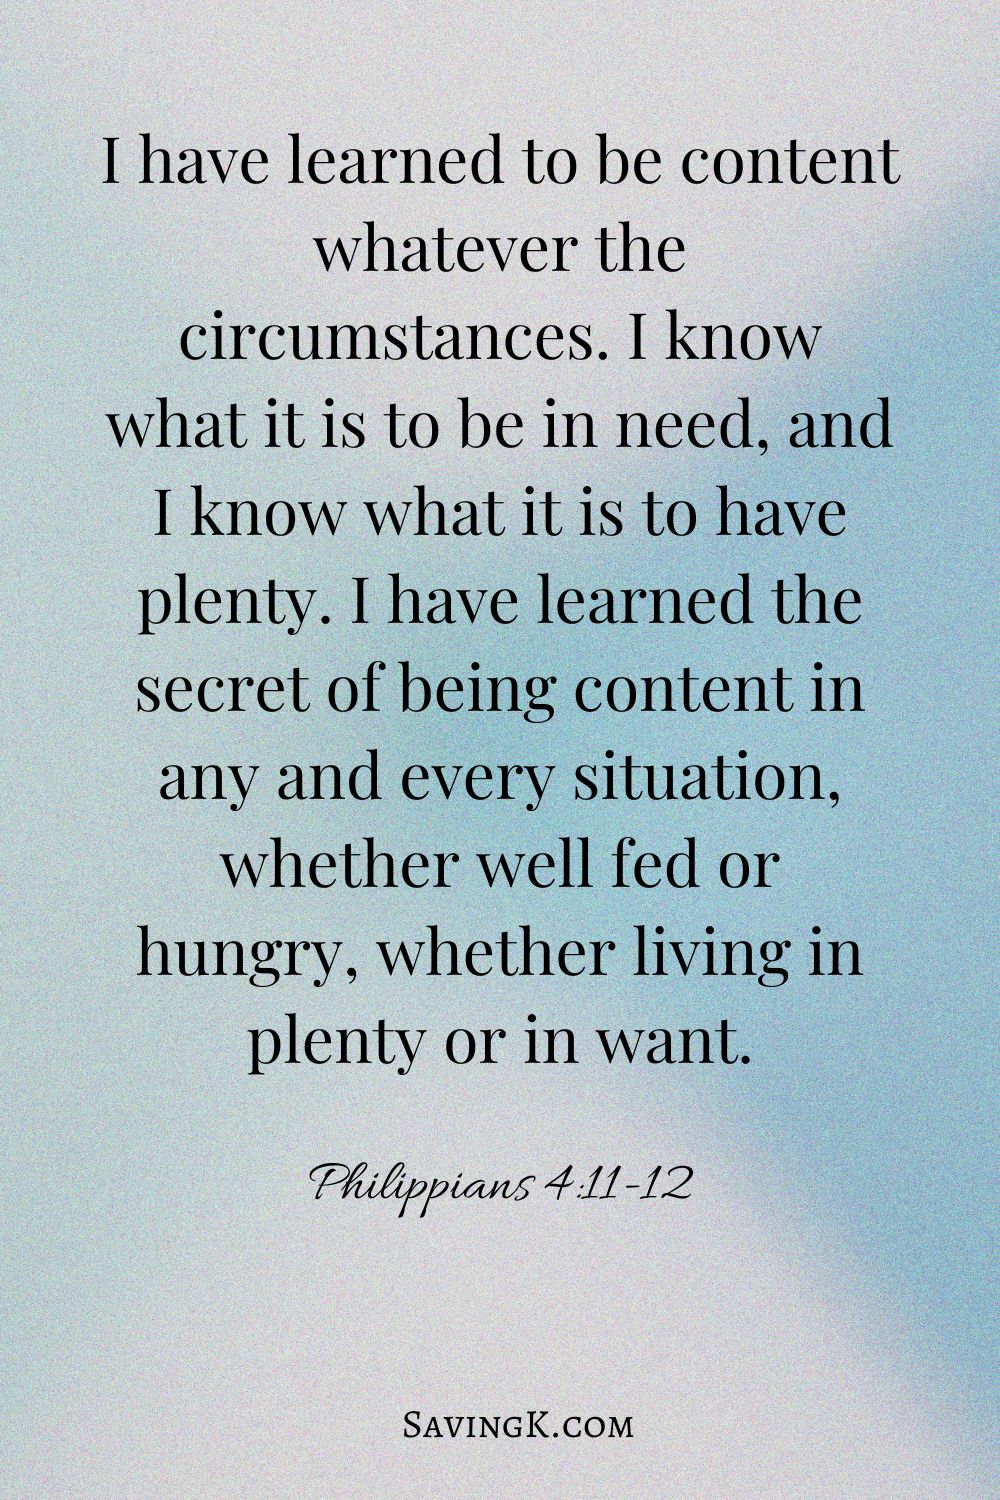 Philippians 4:11-12